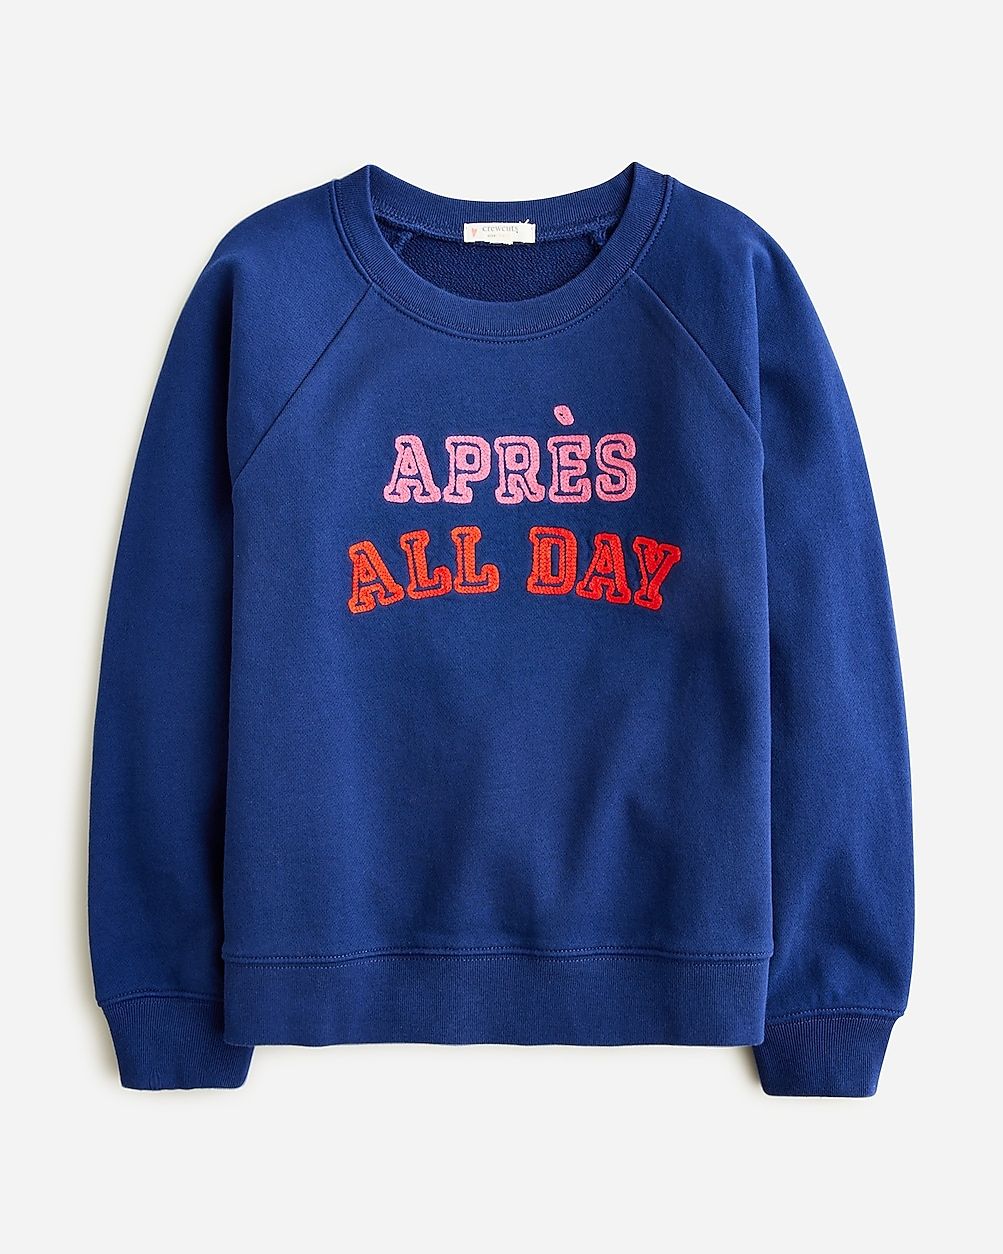 Girls' "après all day" sweatshirt | J.Crew US